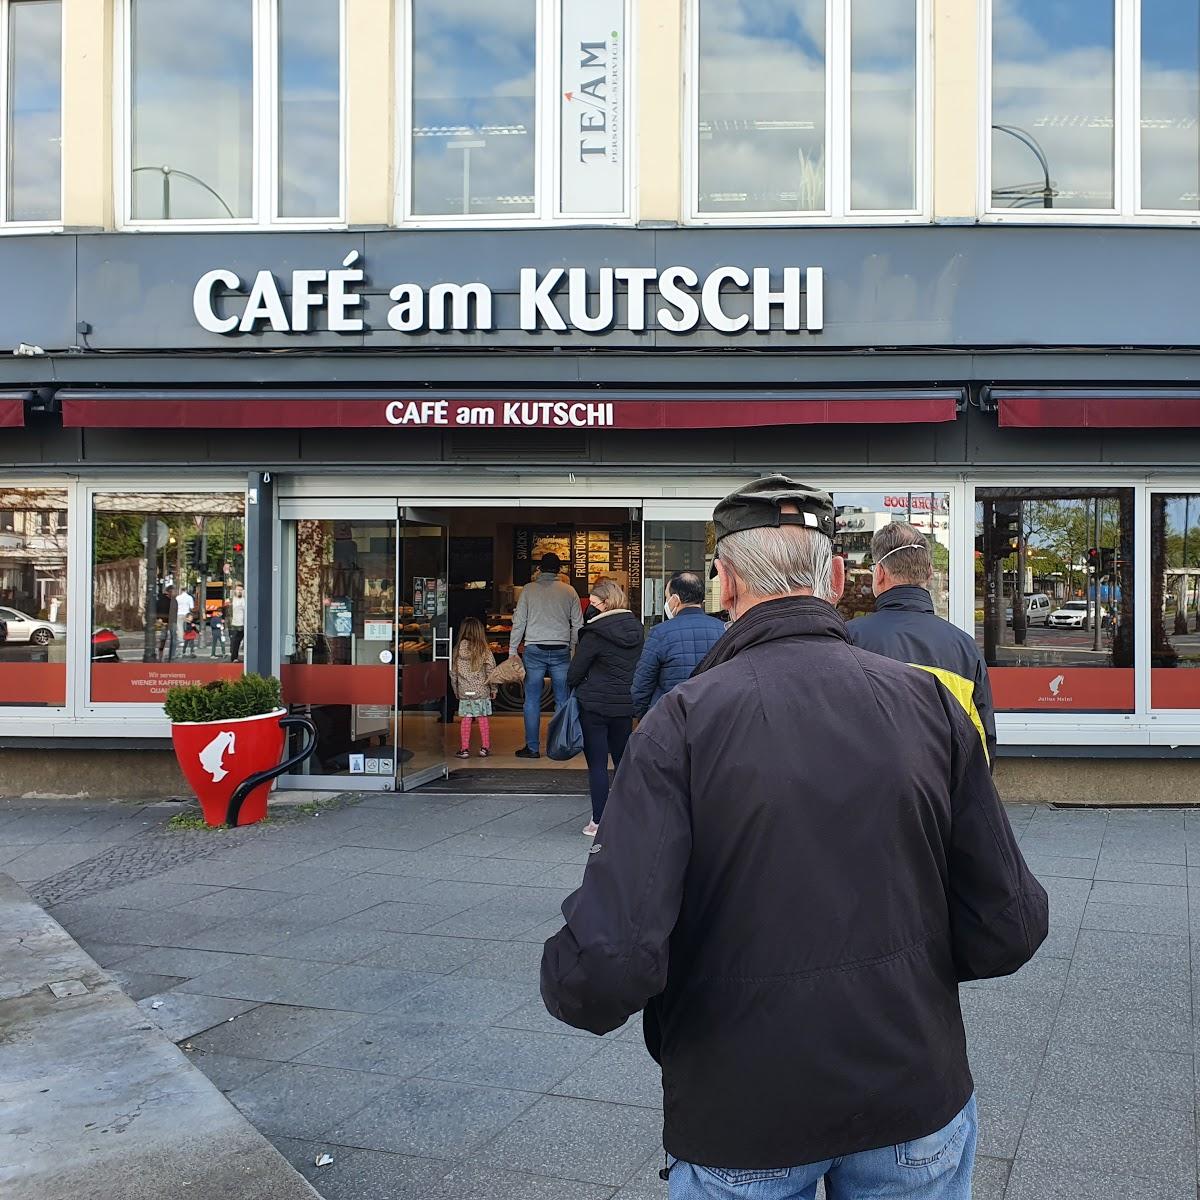 Restaurant "Schäfer